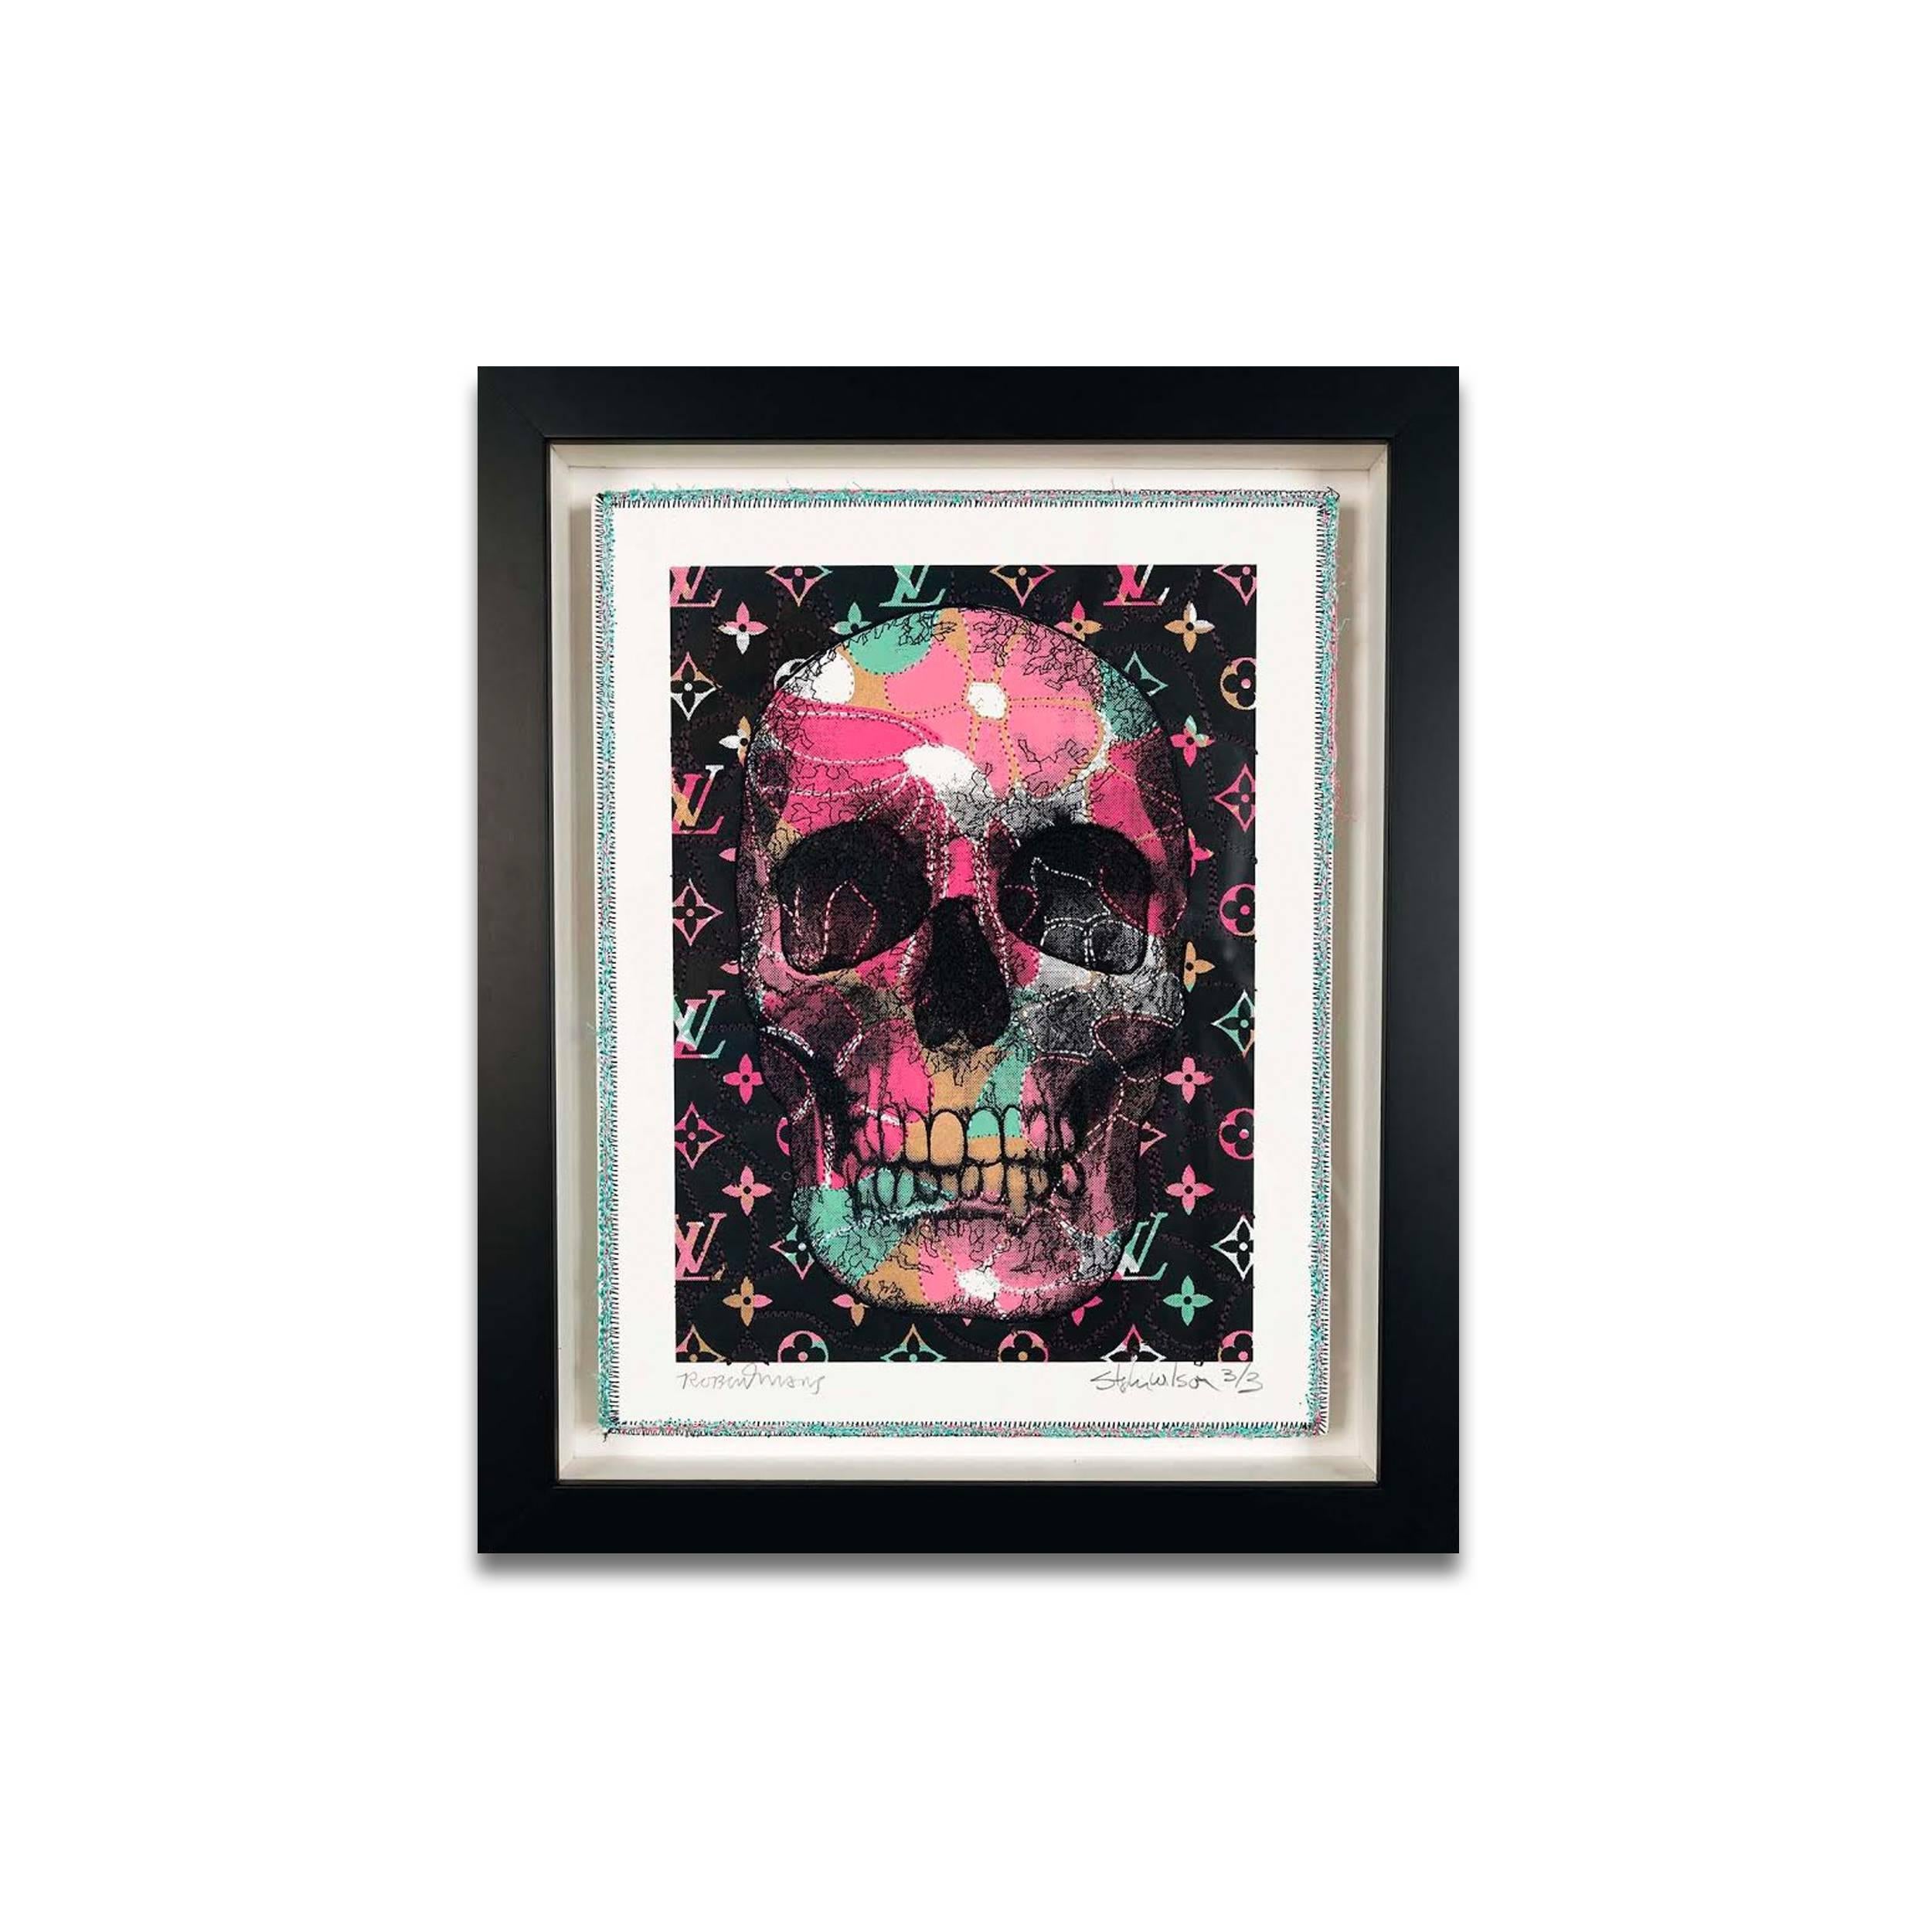 Robert Mars/Stephen Wilson Skulls Collaboration 2 est une œuvre figurative abstraite contemporaine rose et turquoise et noire en techniques mixtes qui mesure 12 x 9 et dont le prix est de 2 100 $.


Né et élevé à Hoboken, dans le New Jersey, Stephen